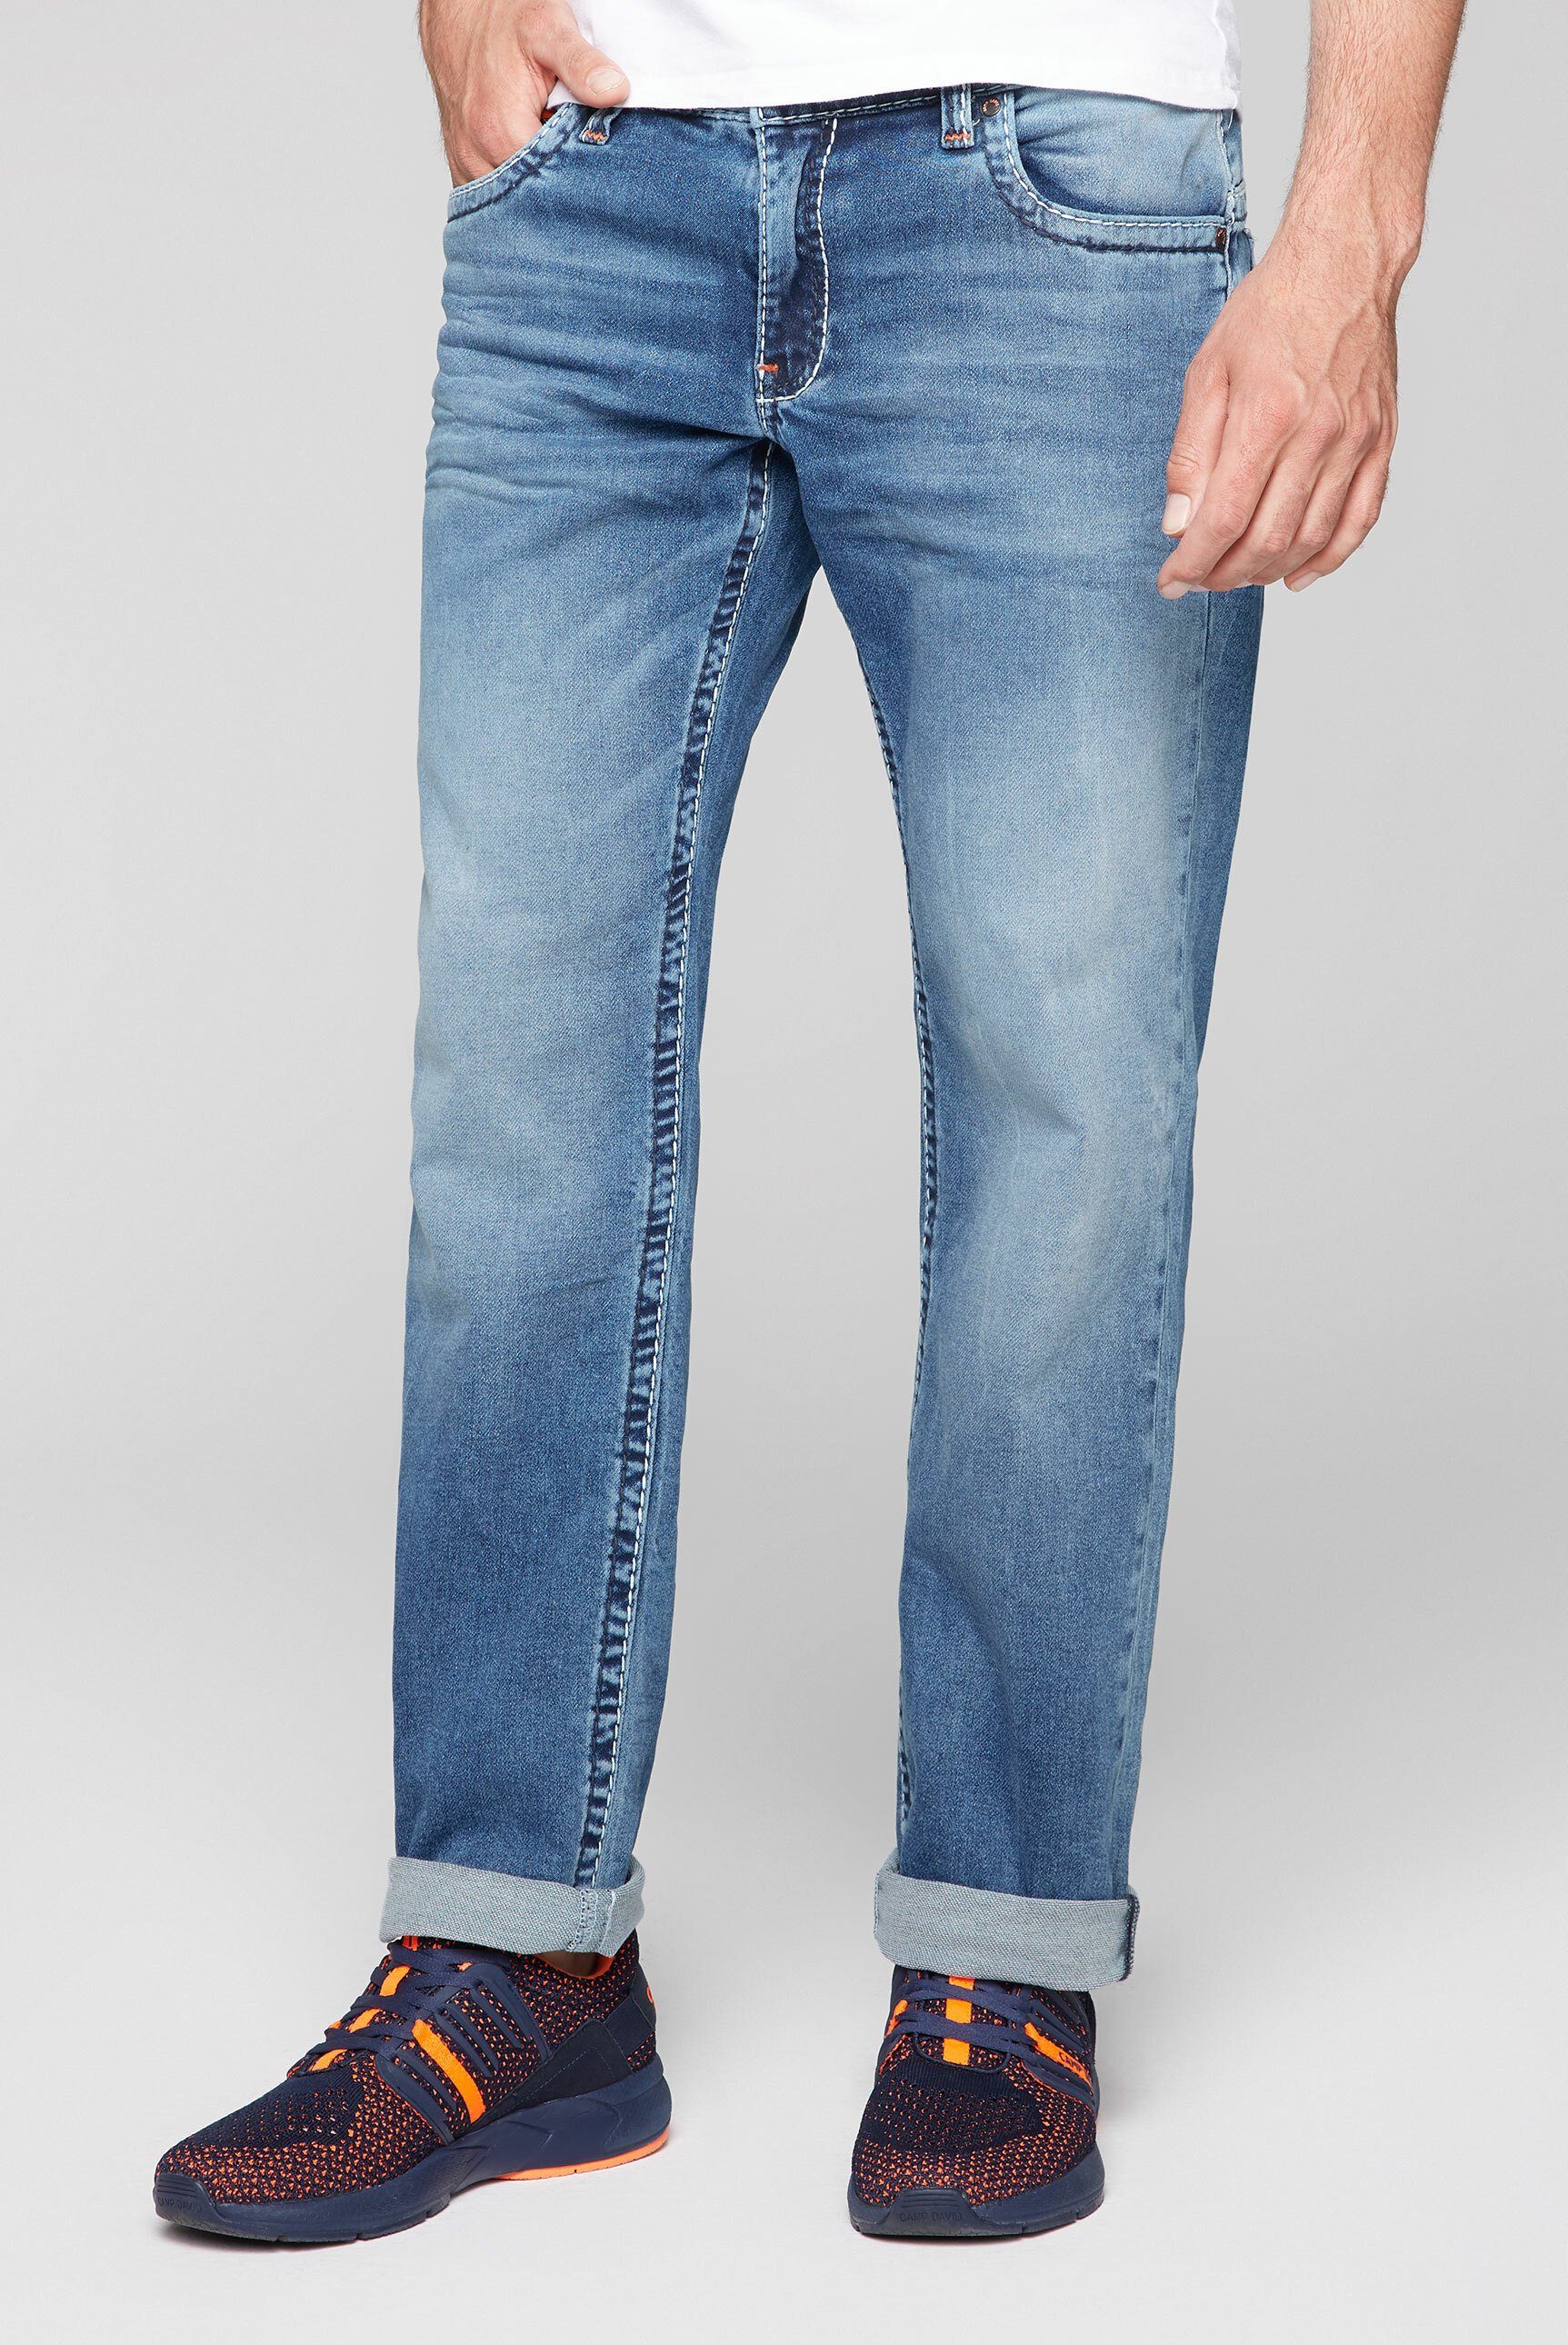 CAMP DAVID Comfort-fit-Jeans mit breiten Nähten | OTTO